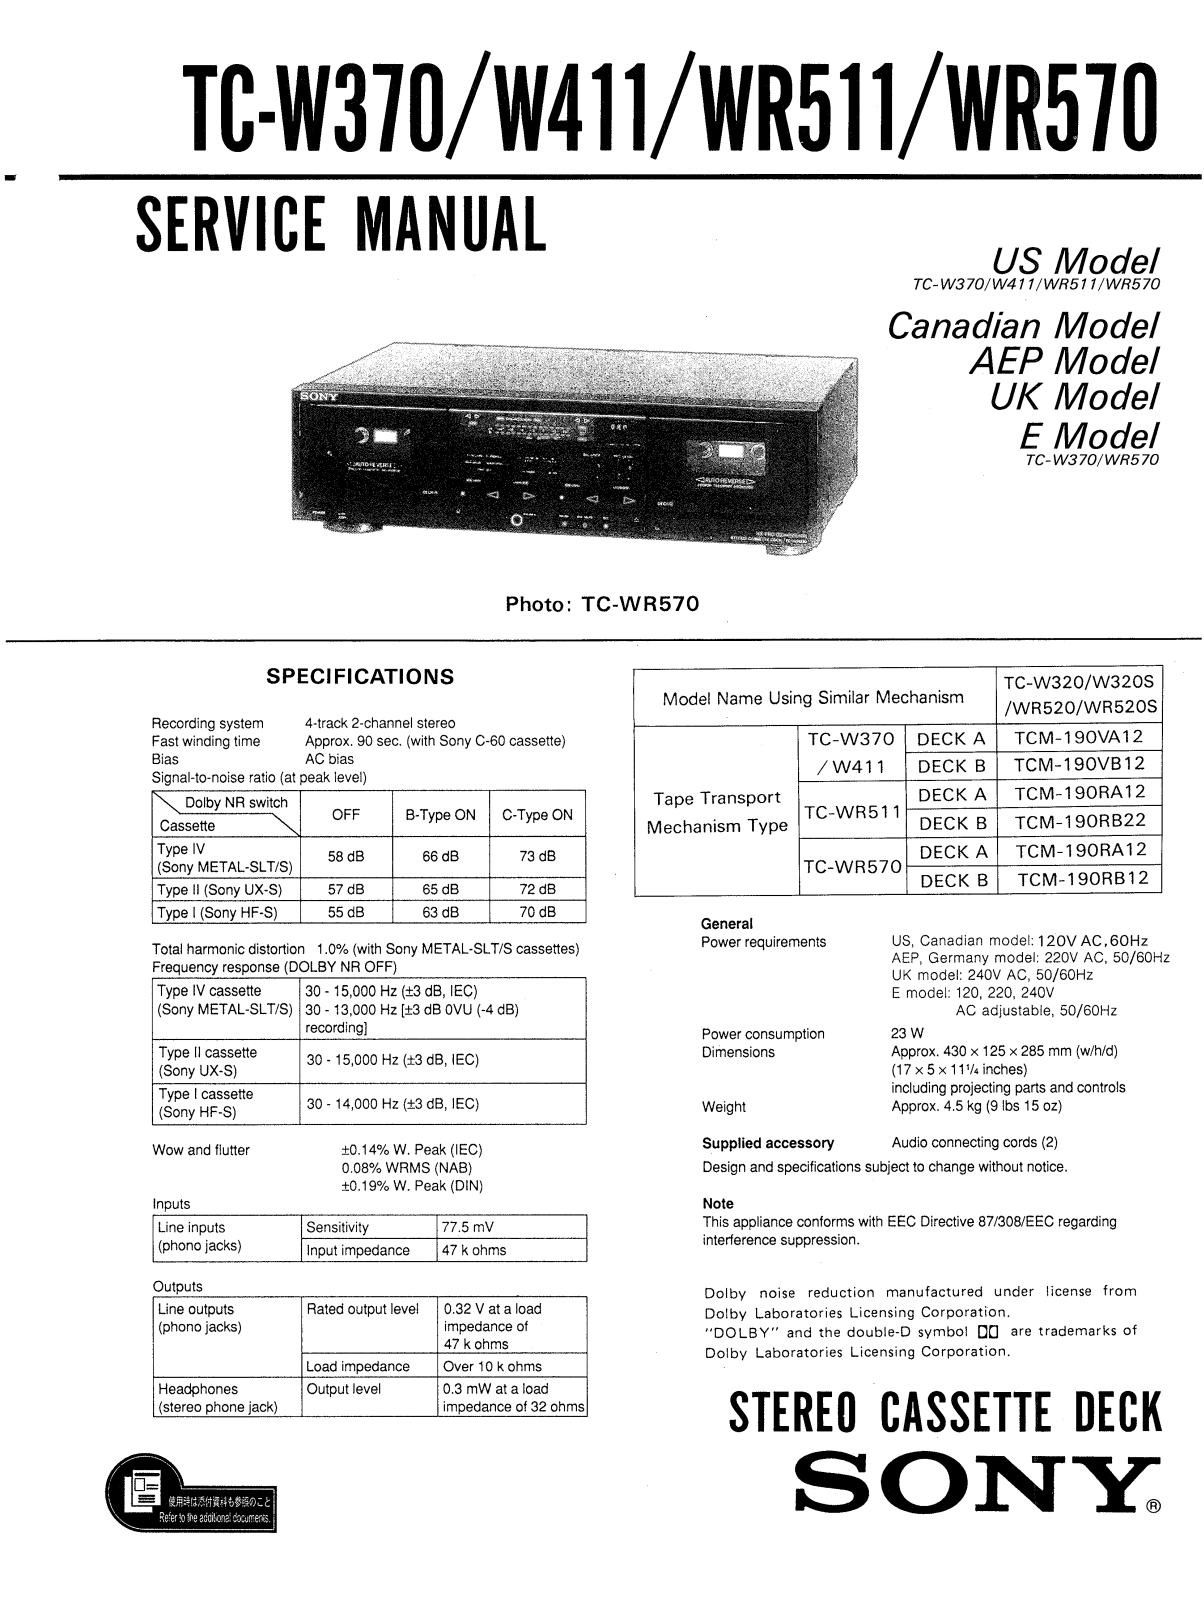 Sony TCW-370 Service manual